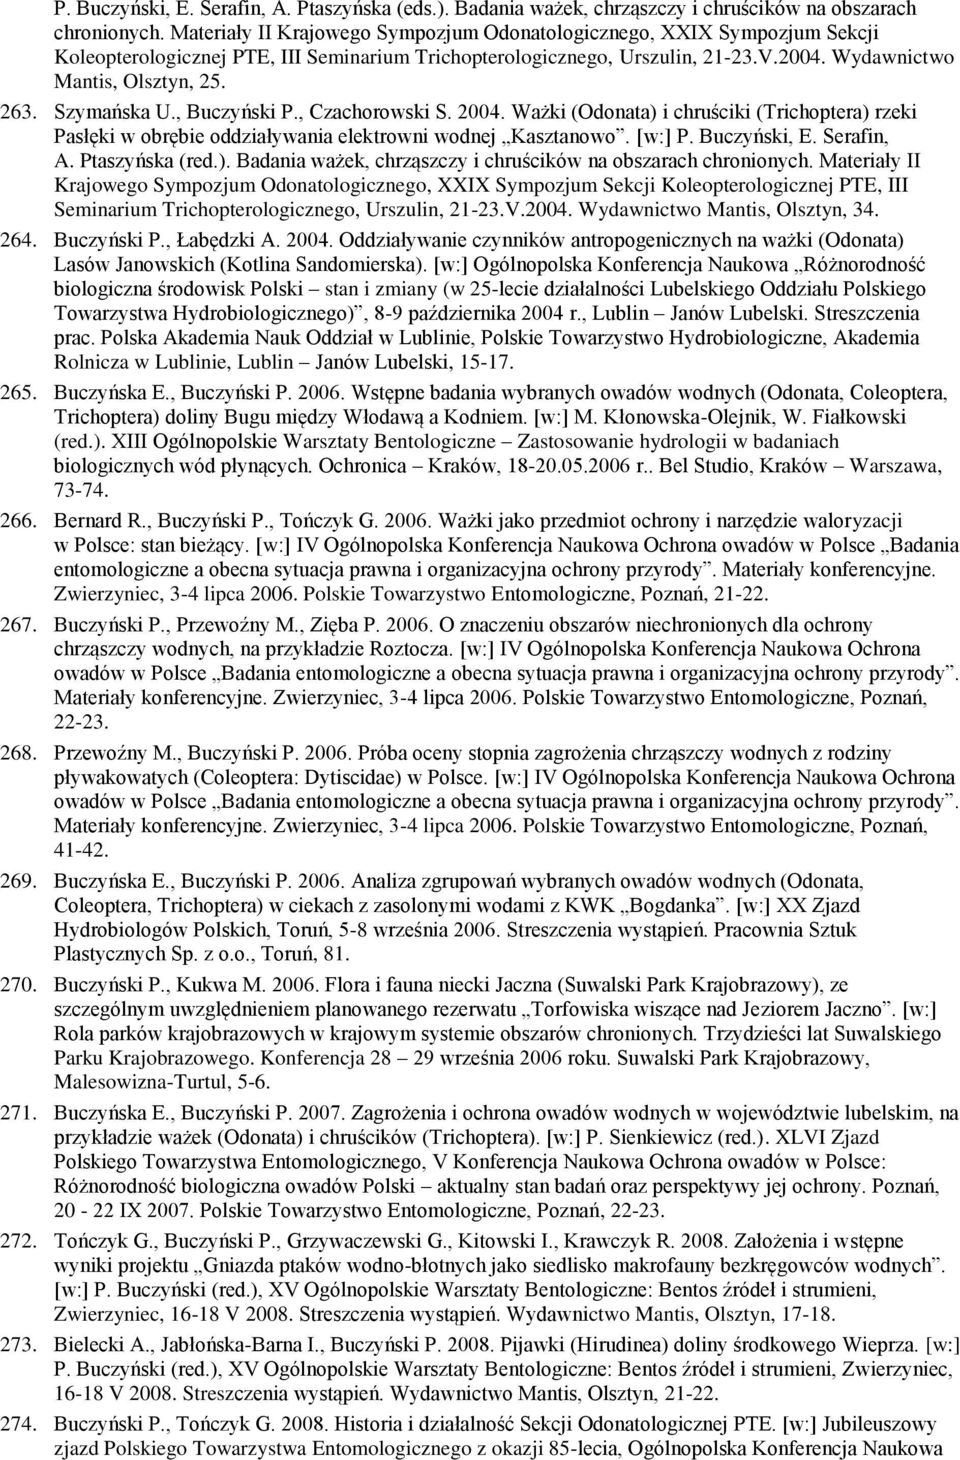 Szymańska U., Buczyński P., Czachorowski S. 2004. Ważki (Odonata) i chruściki (Trichoptera) rzeki Pasłęki w obrębie oddziaływania elektrowni wodnej Kasztanowo. [w:] P. Buczyński, E. Serafin, A.